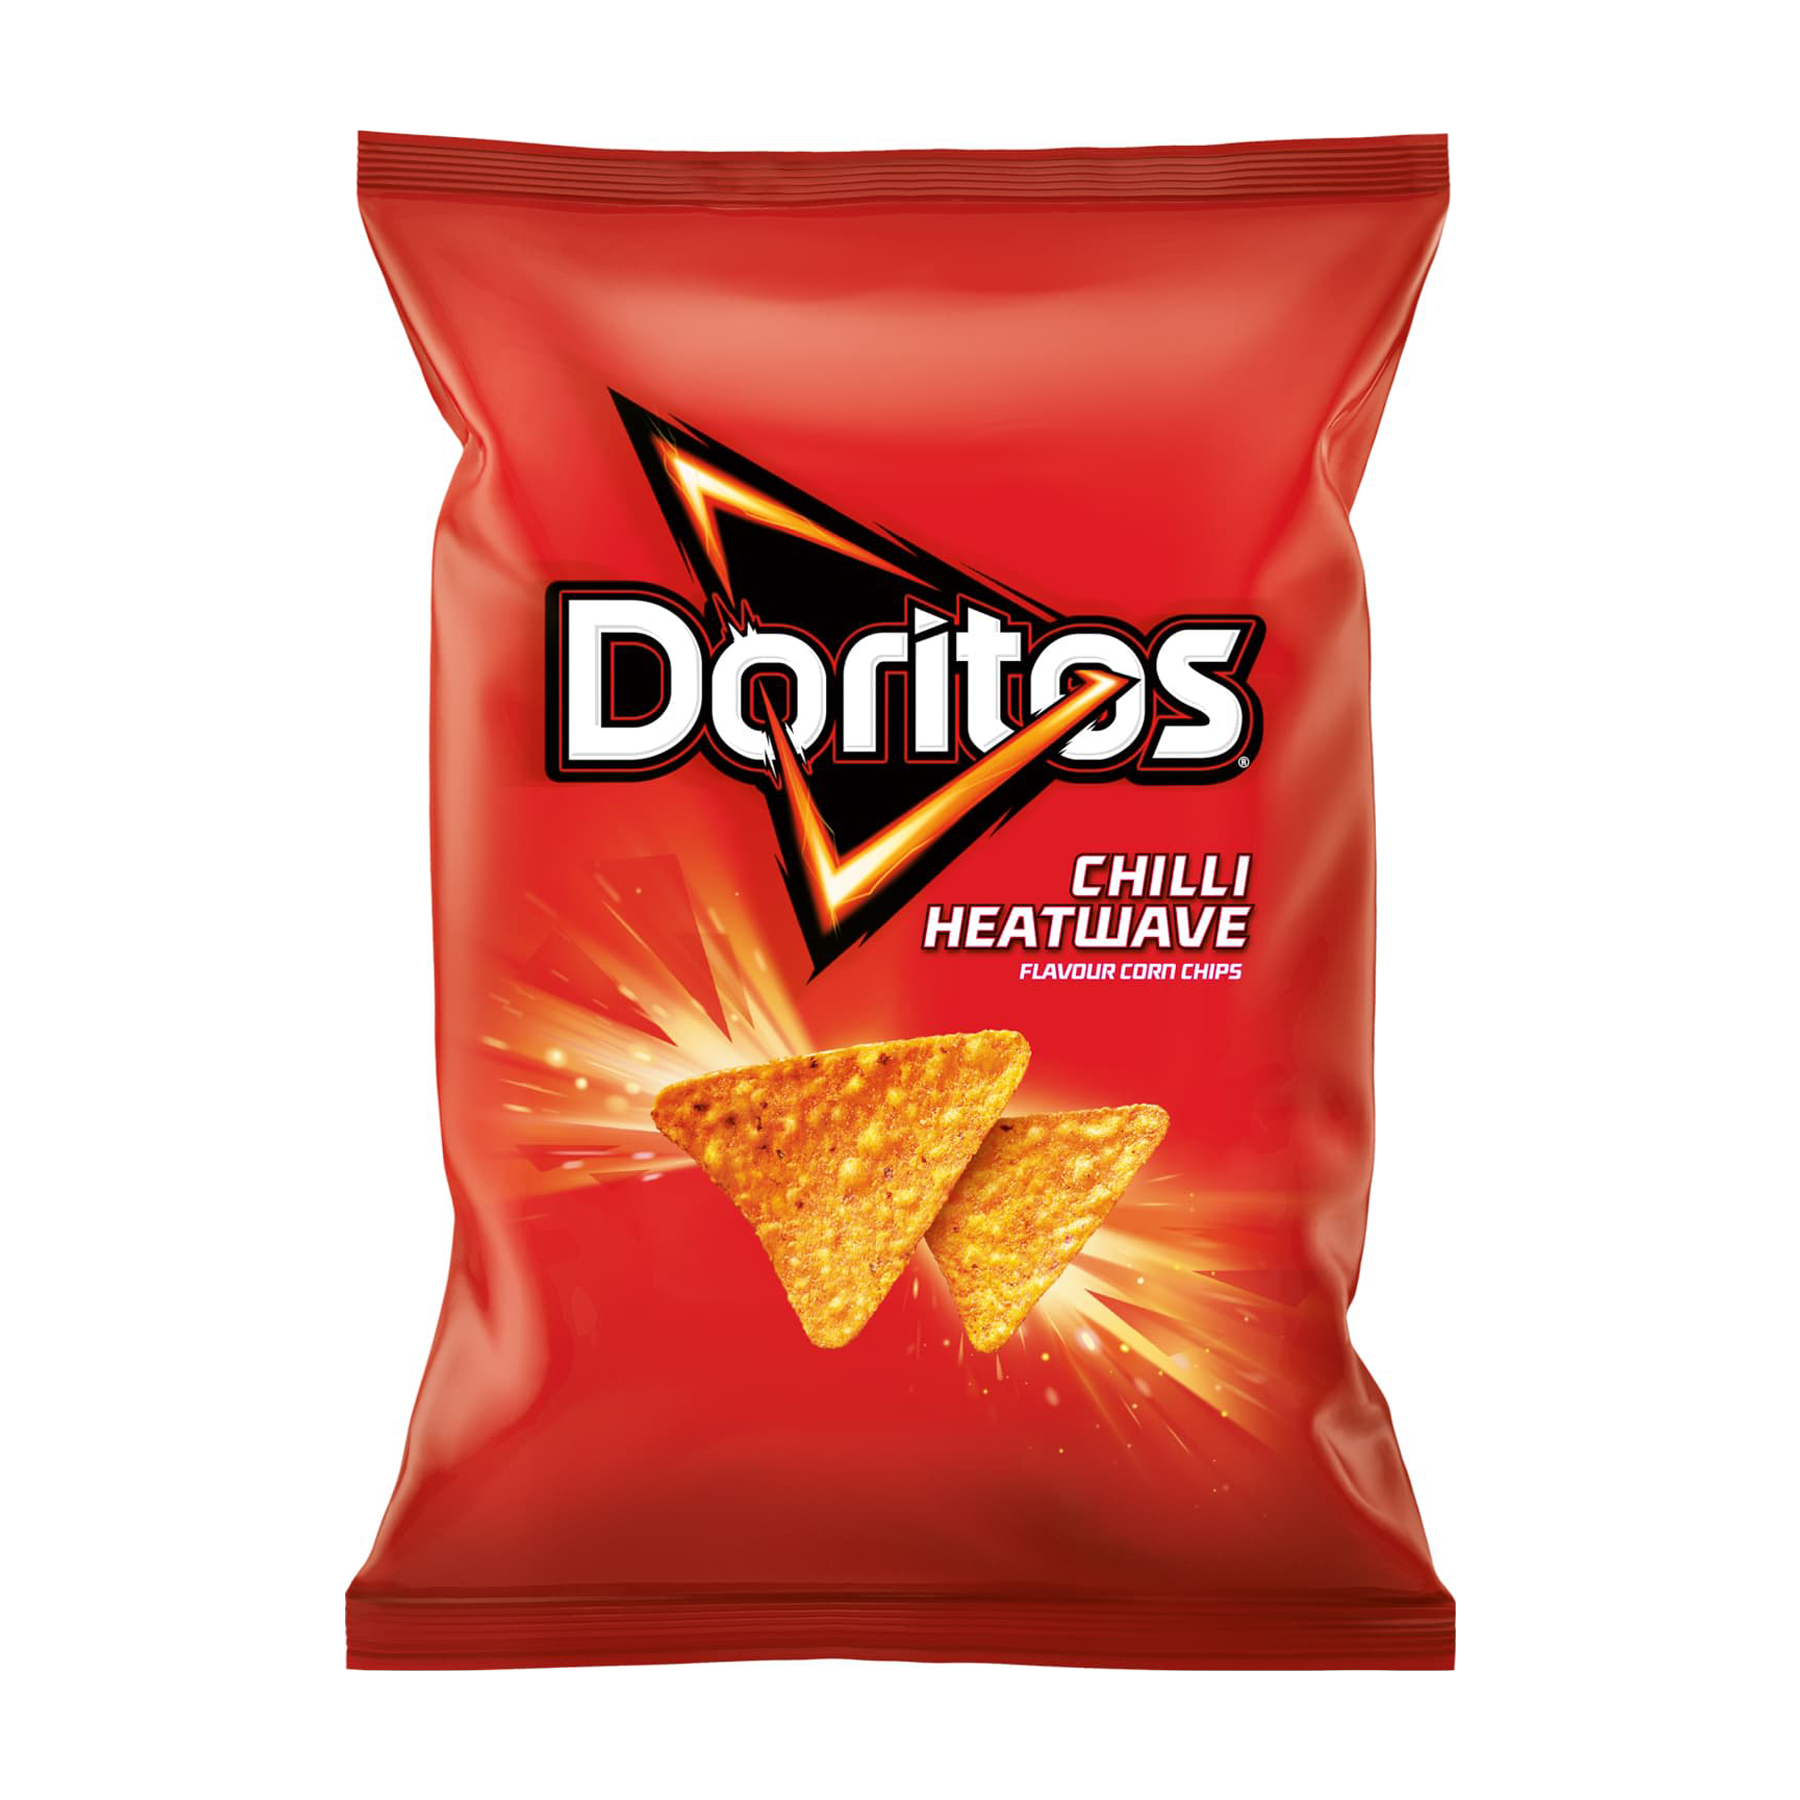 Doritos Chilli Heatwave Flavored Chips (40G)